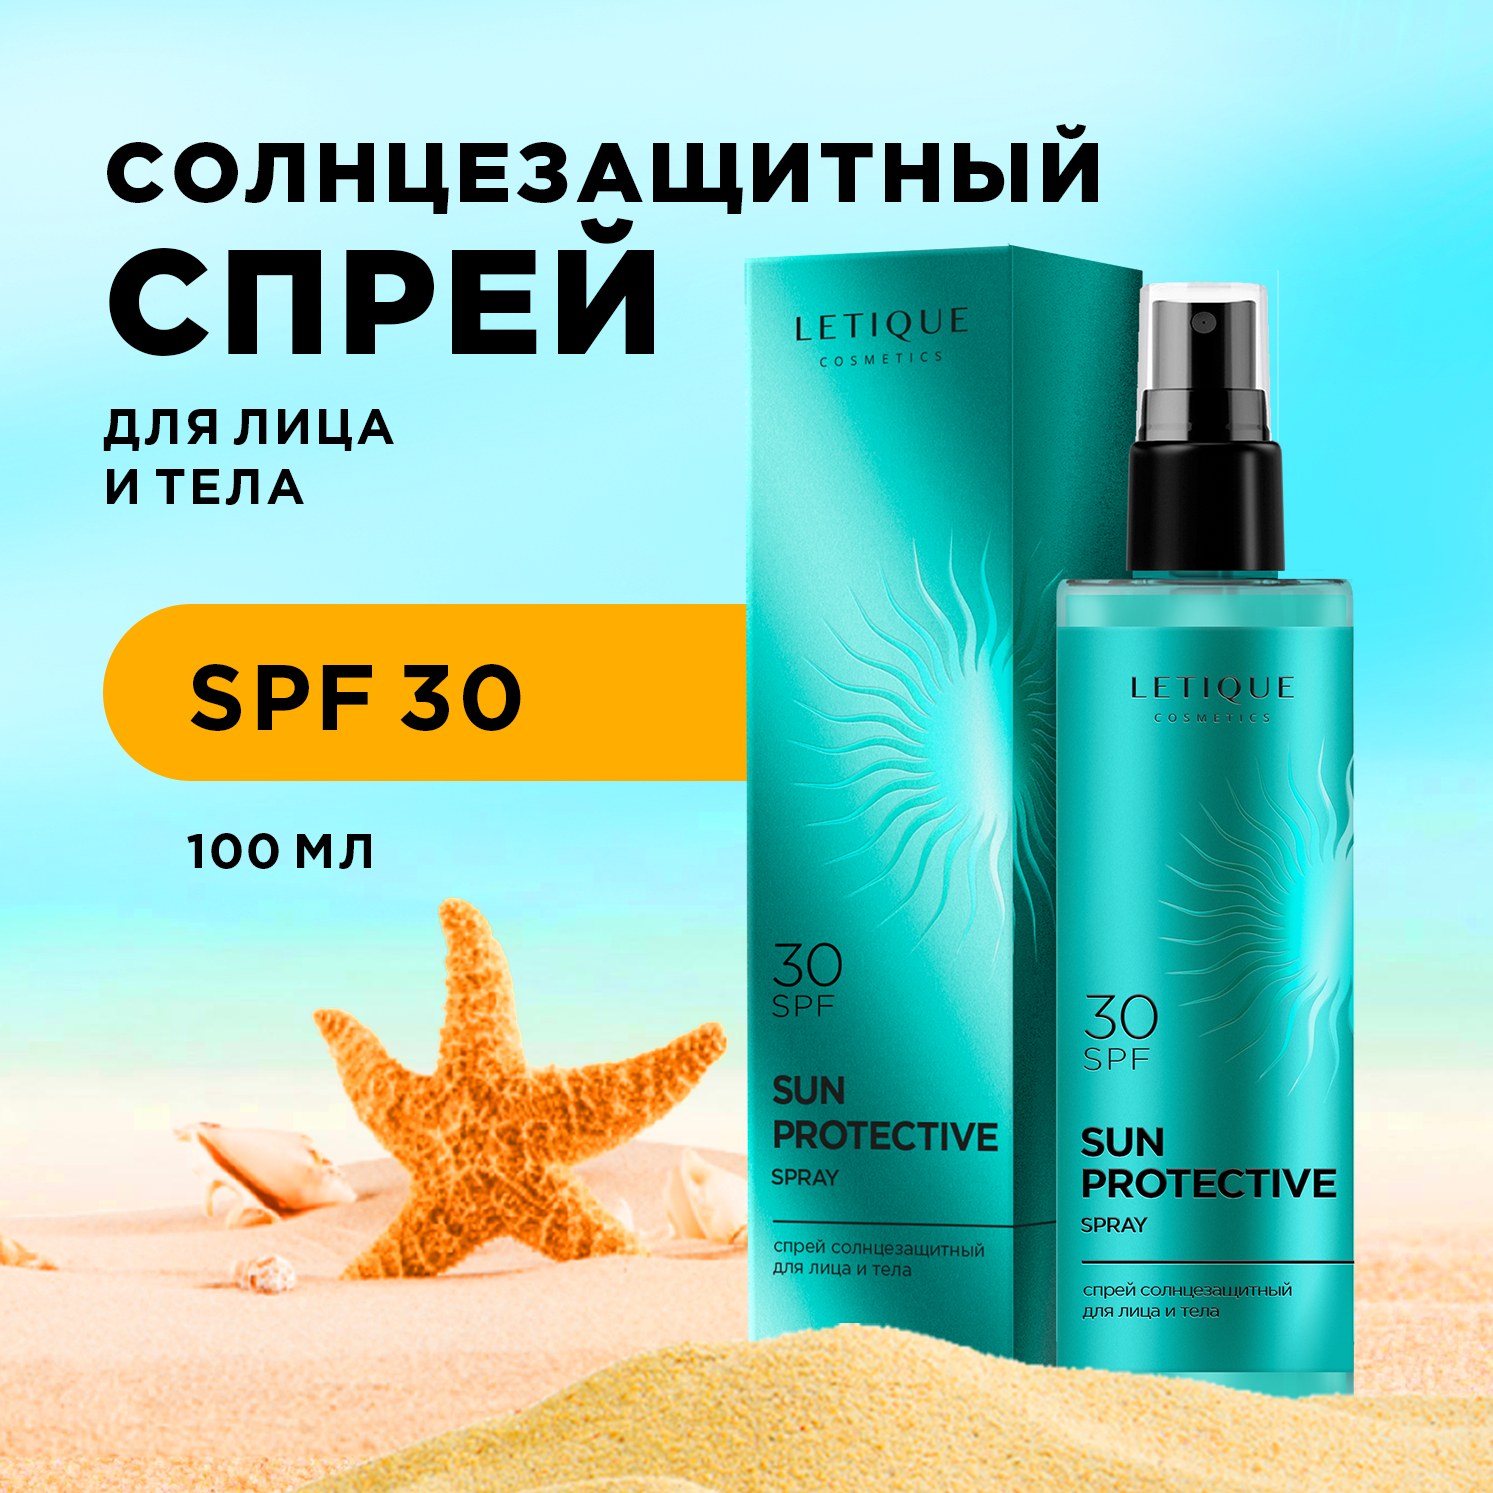 Спрей солнцезащитный для лица и тела Letique Cosmetics Sun protective spray SPF 30 100 мл